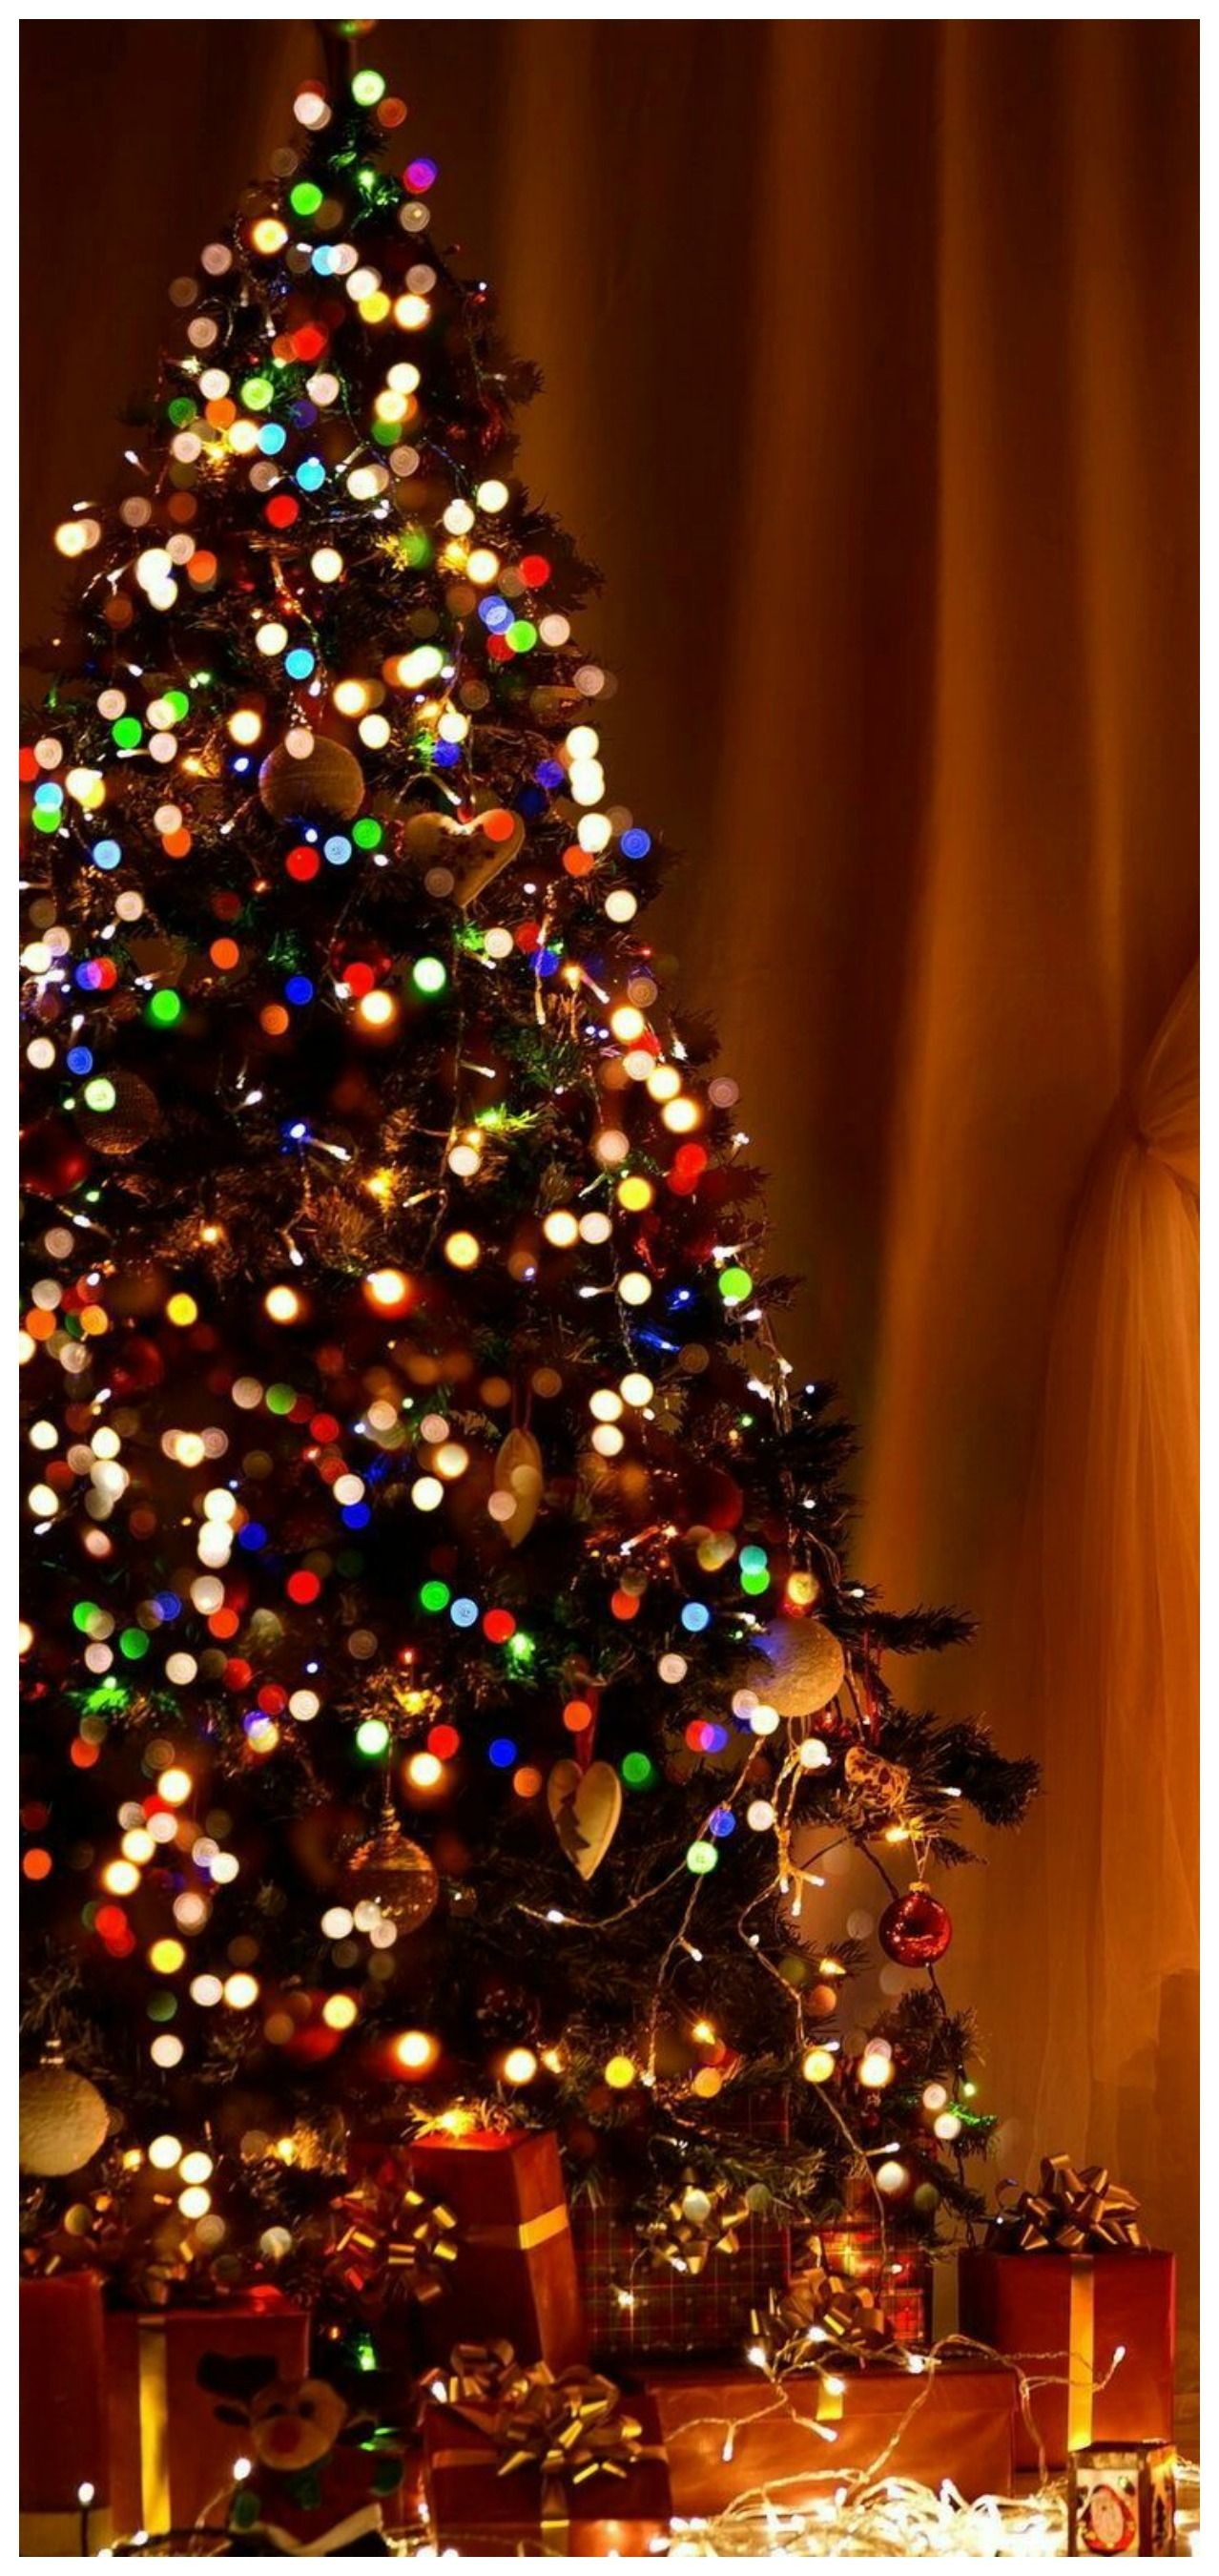 크리스마스 배경 tumblr,크리스마스 트리,크리스마스 장식,나무,크리스마스 장식,크리스마스